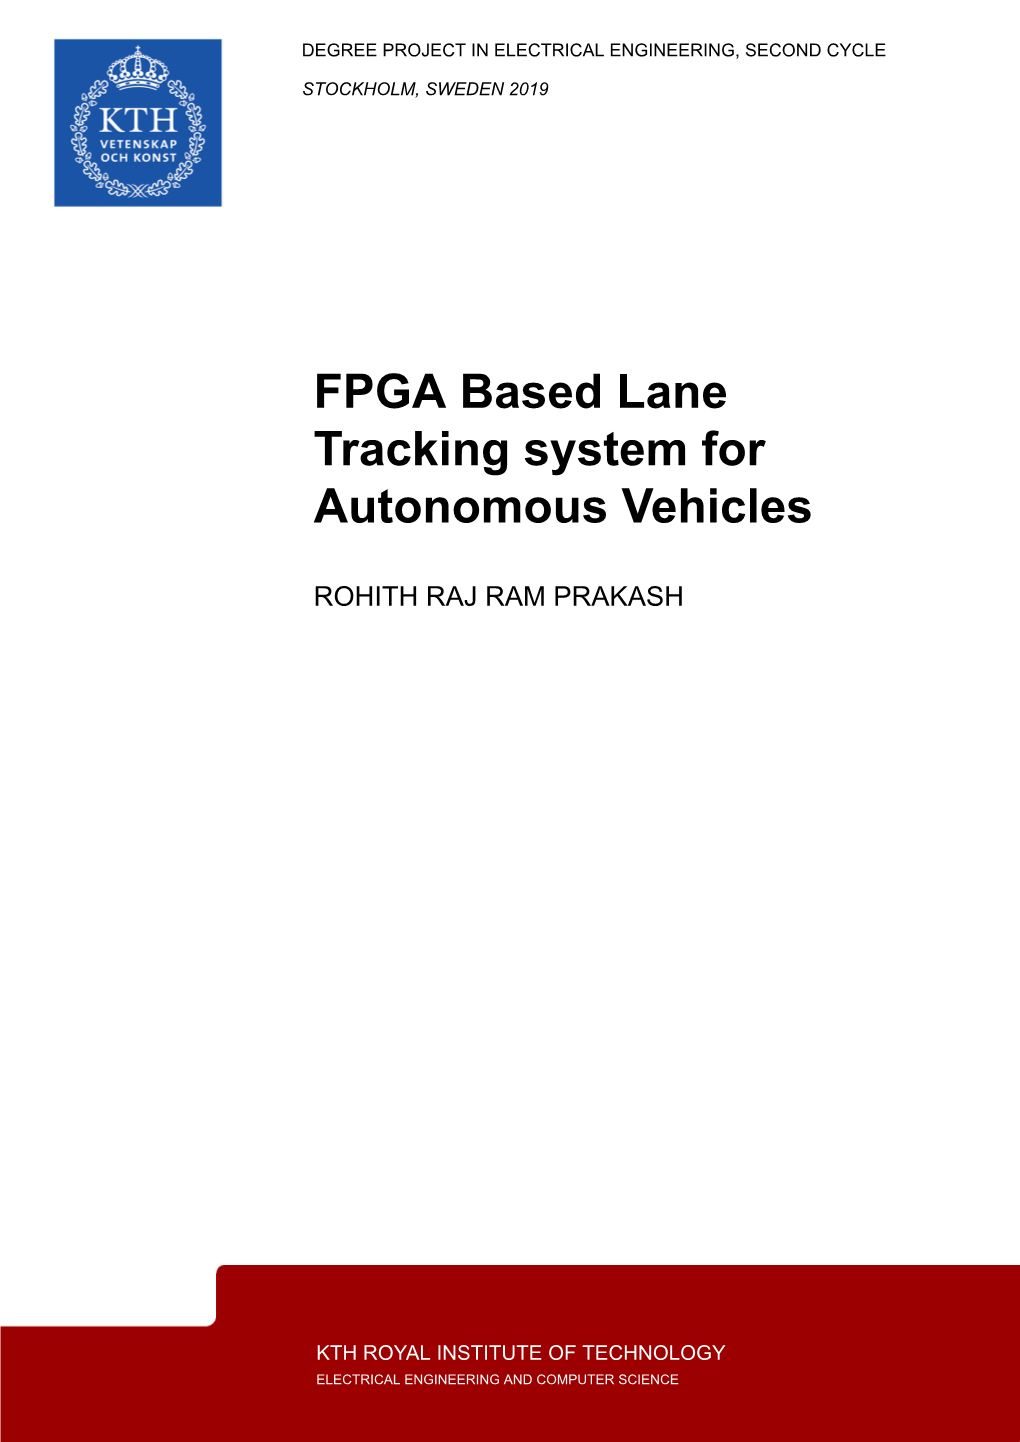 FPGA Based Lane Tracking System for Autonomous Vehicles